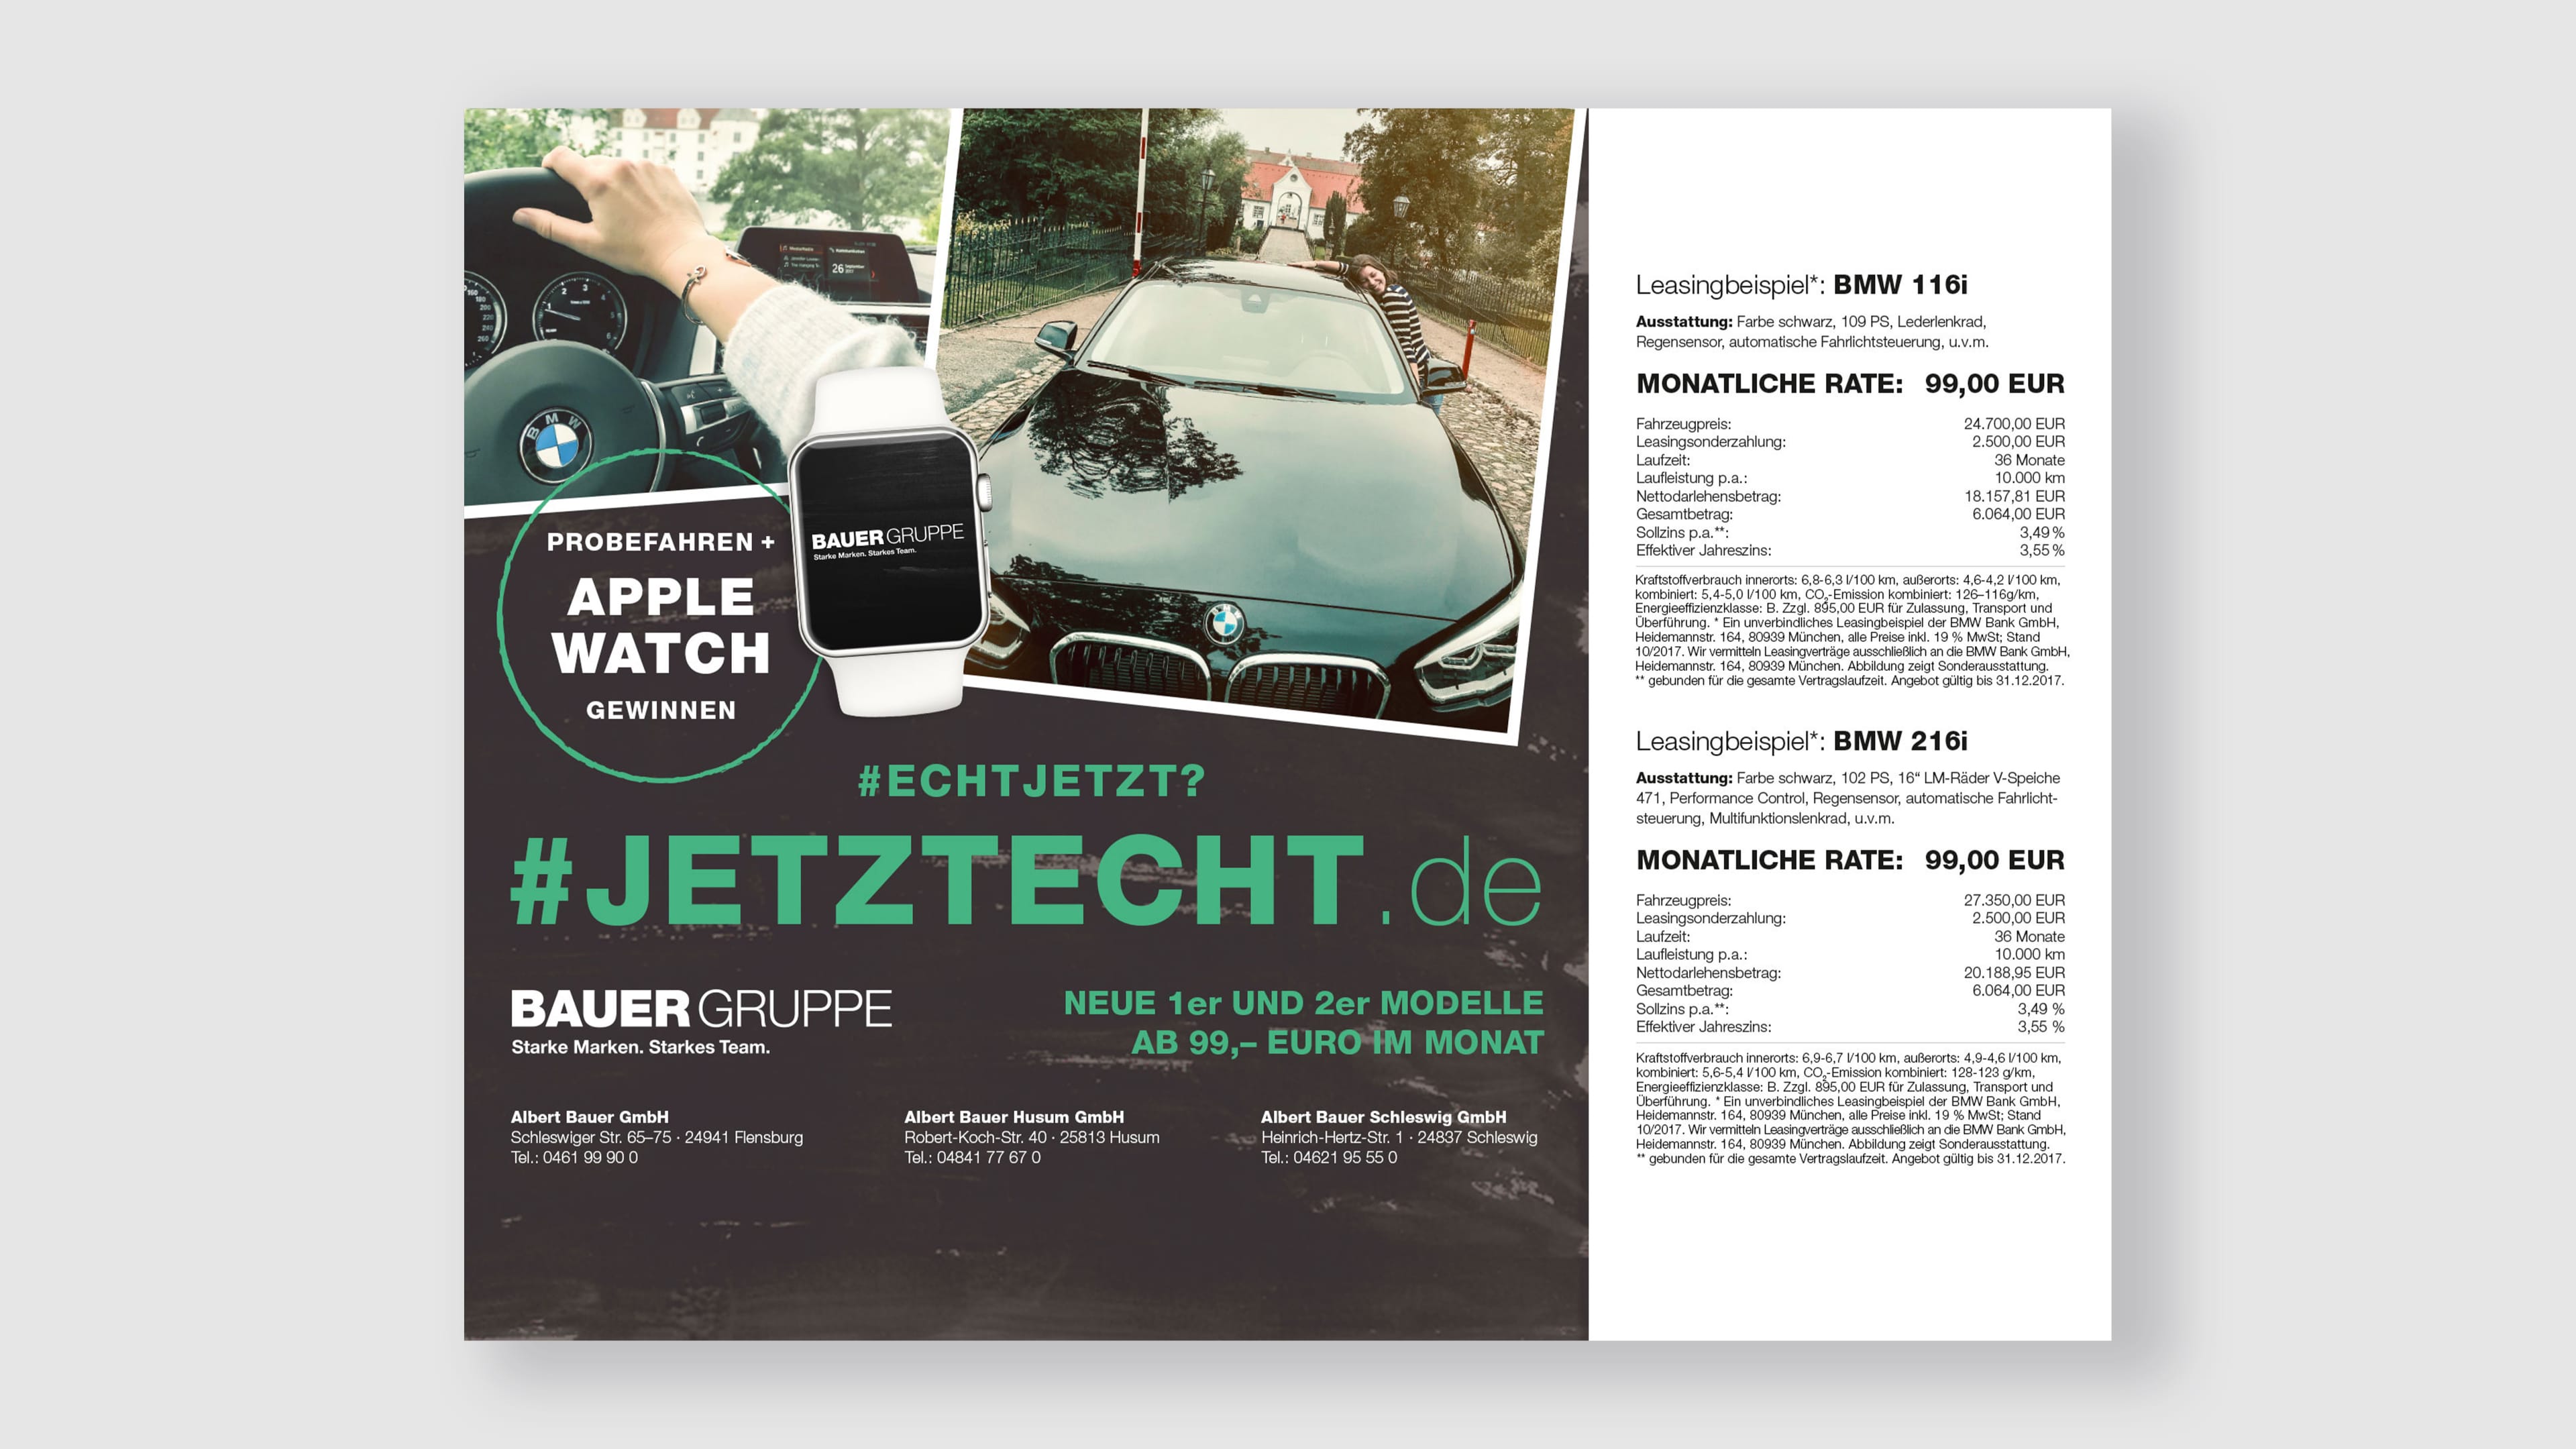 Leasingangebot für zwei BMW-Modelle Infos und Preis neben quadratischem Foto